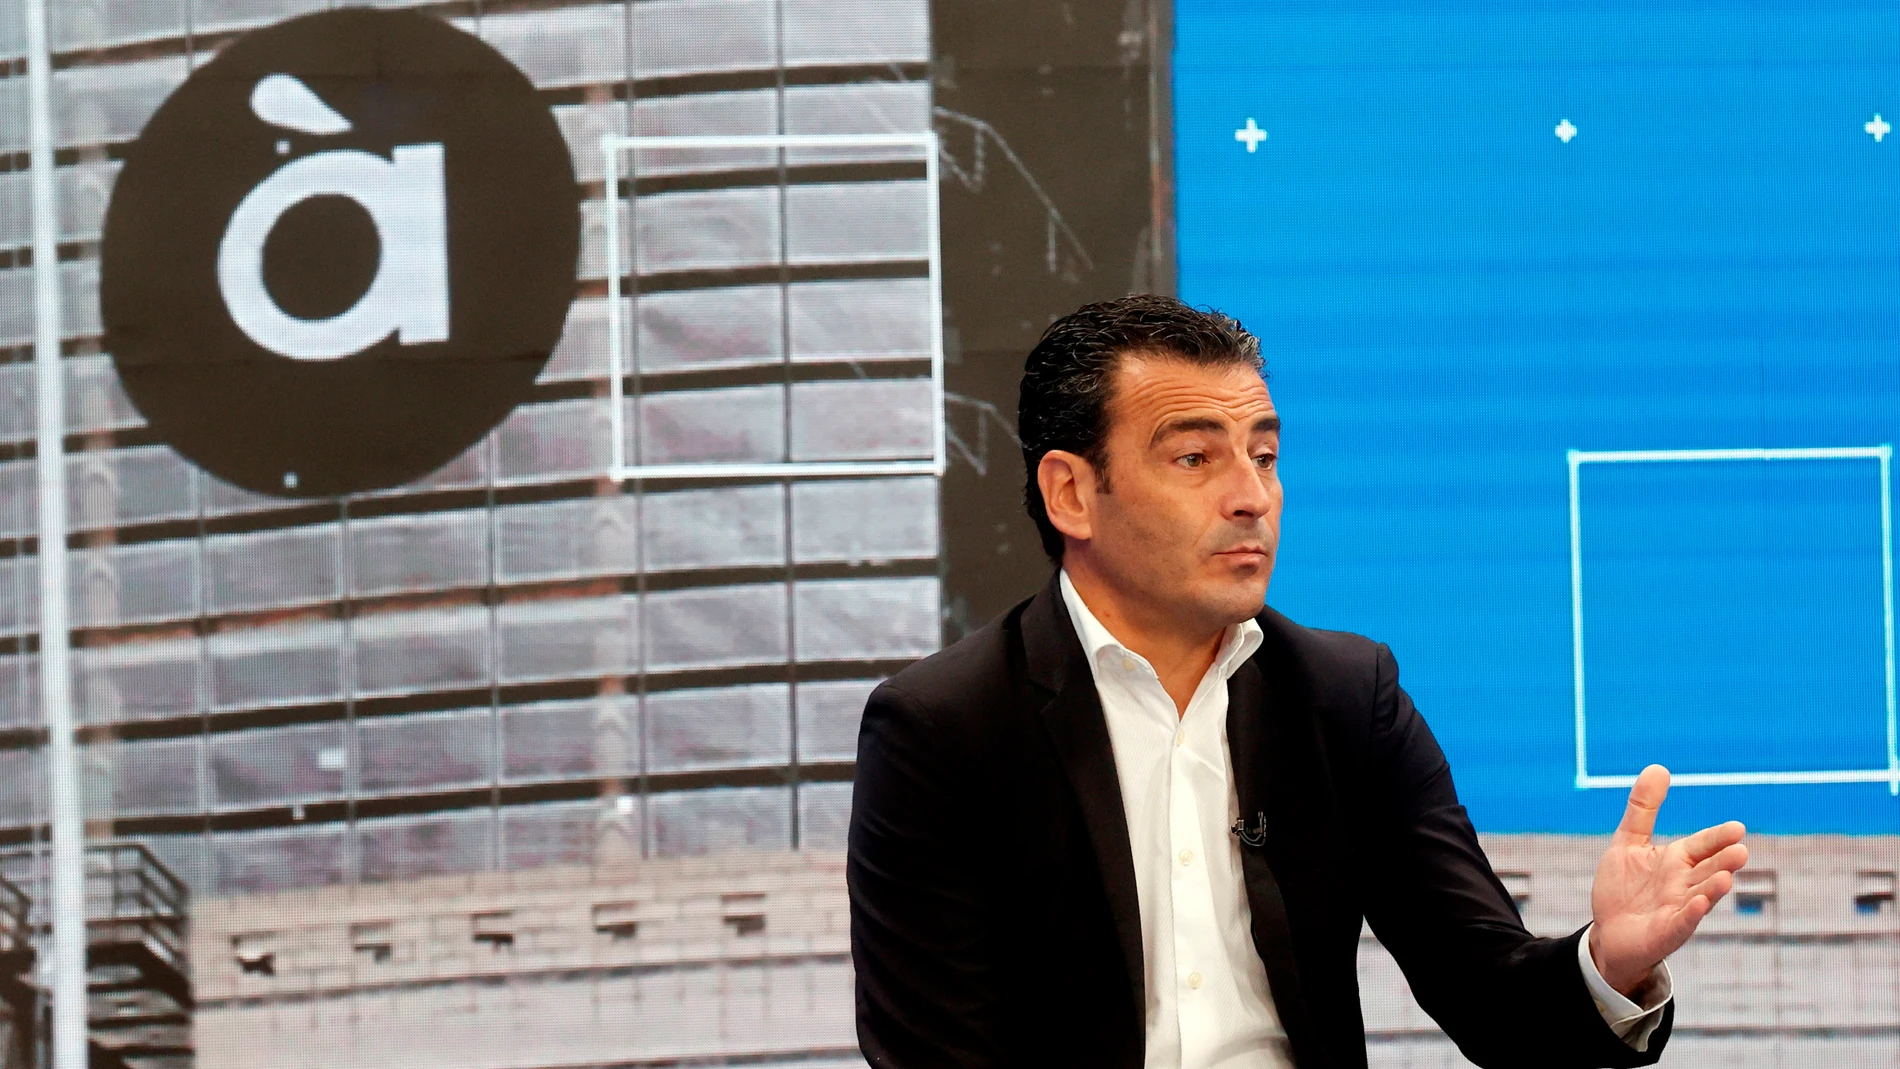 El director general de À Punt Mèdia, Alfred Costa, durante la presentación de las principales novedades informativas de la televisión y la radio de À Punt Mèdia para esta temporada